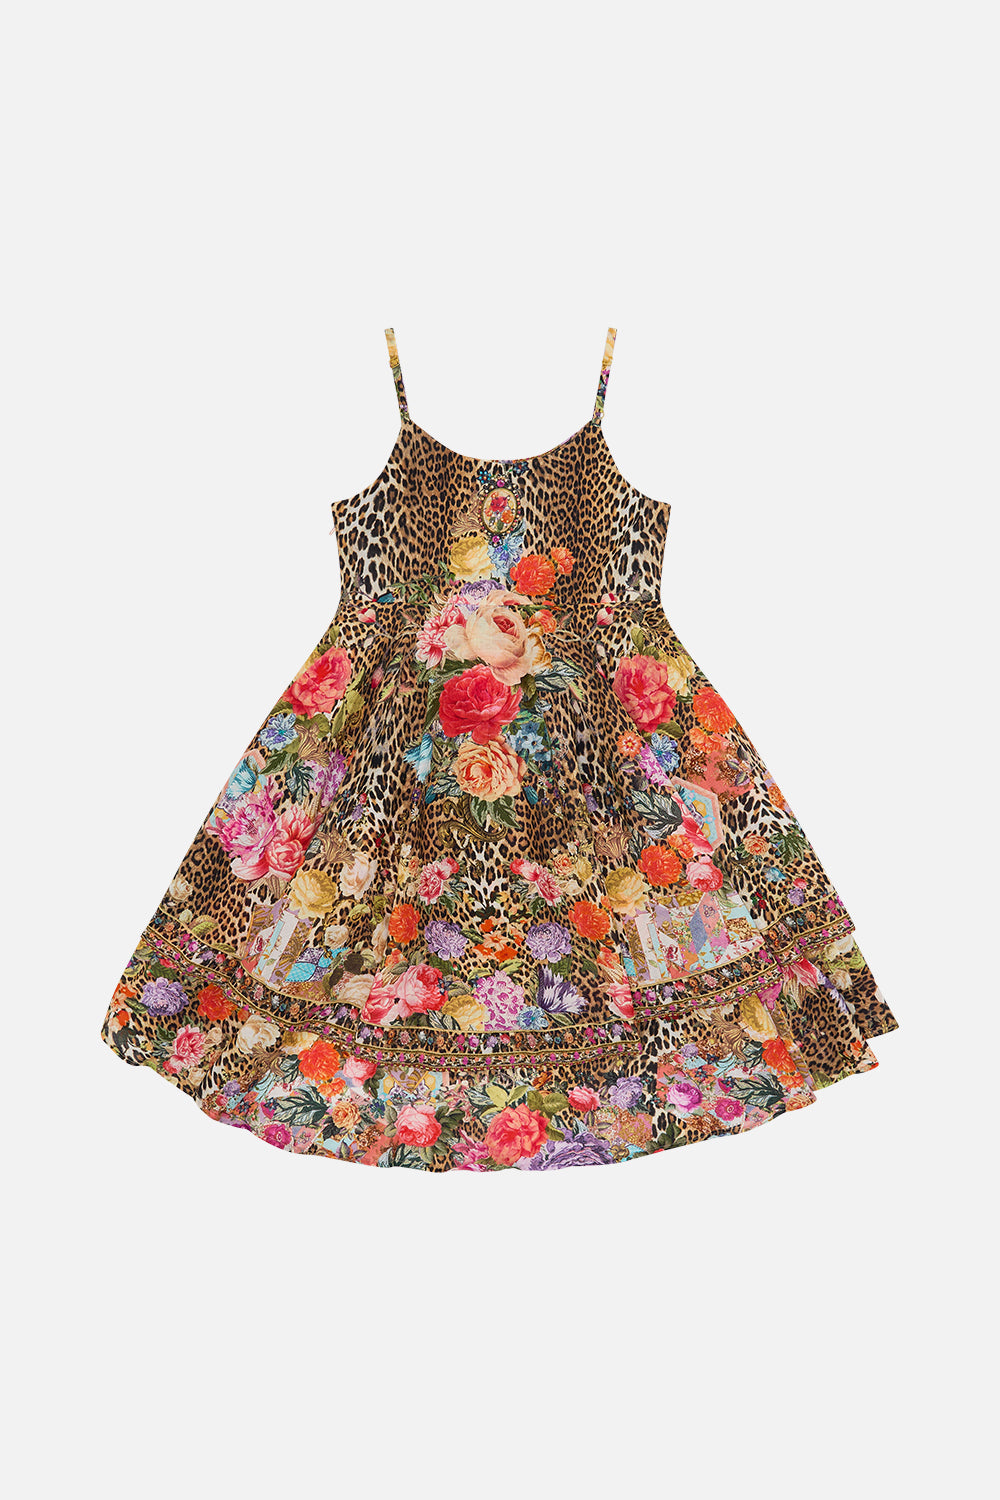 Milla by CAMILLA floral kids round neck tiered dress (4-10) in Heirloom Anthem